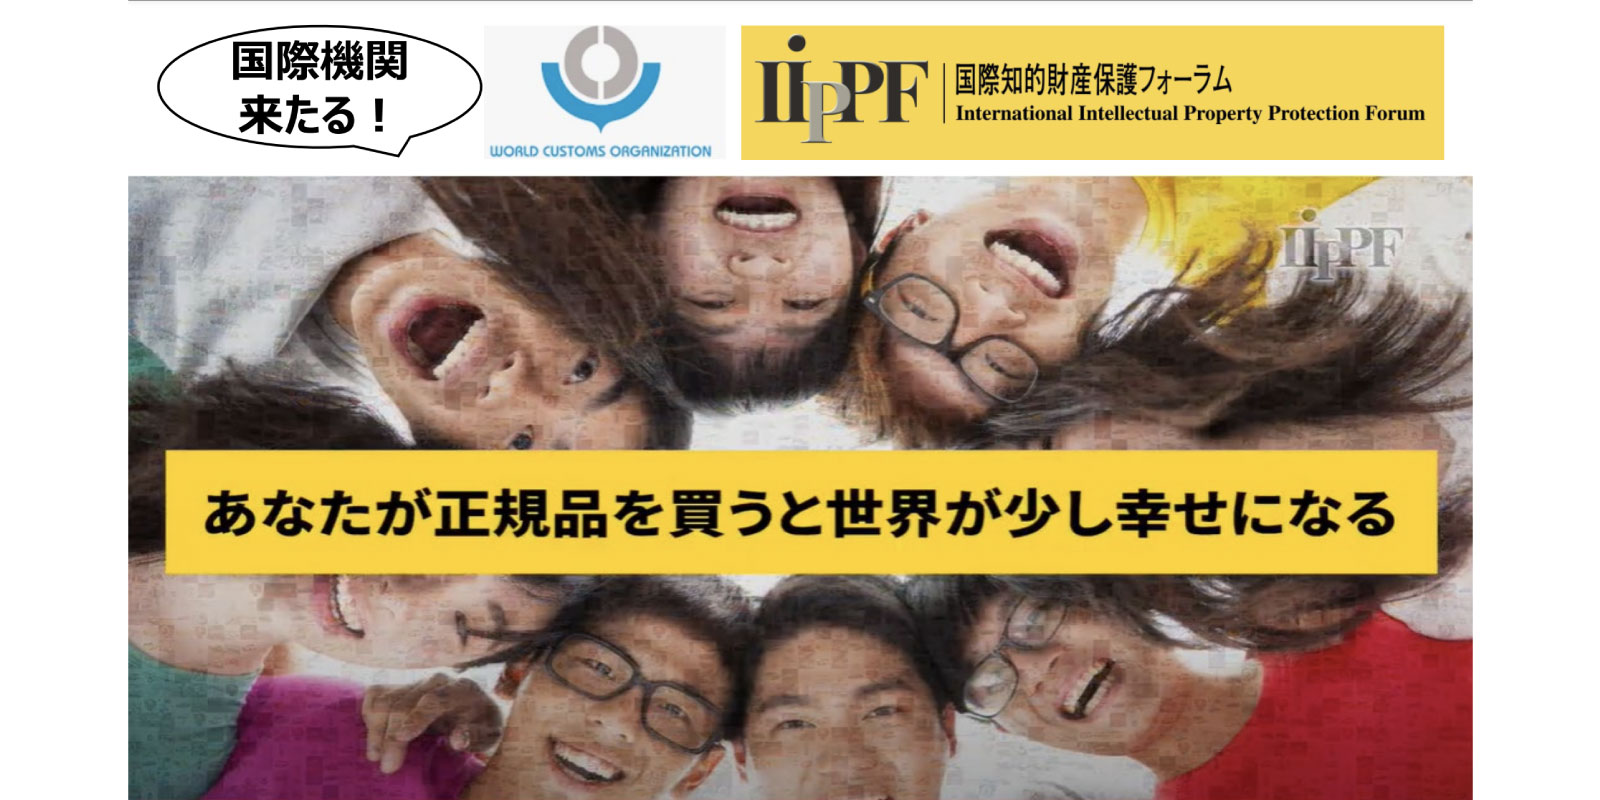 世界税関機構×IIPPF共催、“世界のニセモノ対策”のための知財啓発 